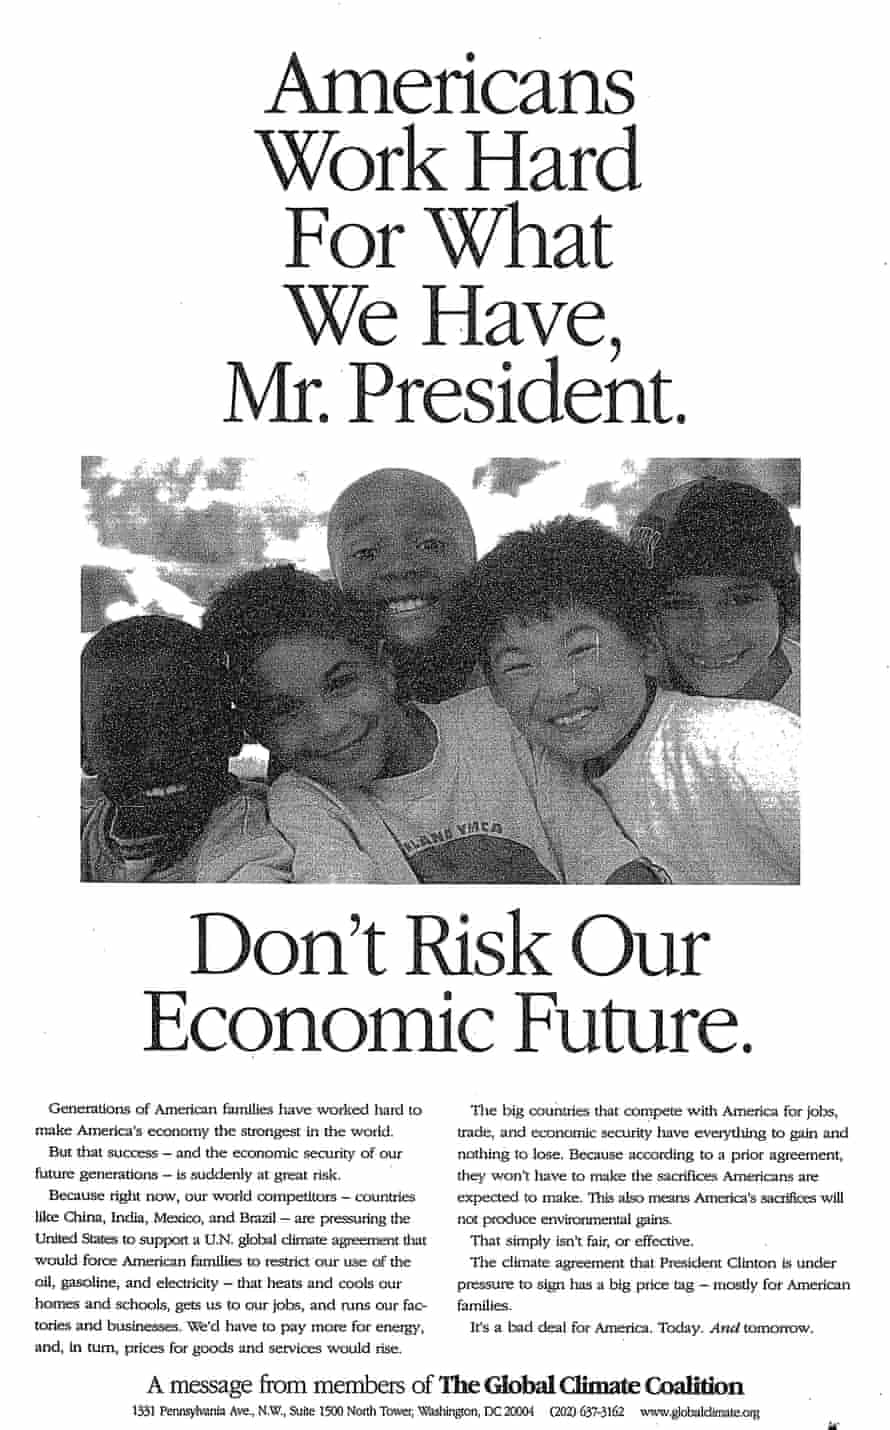 Глобальный климатический альянс, Декларация 1997 года: "Американцы много работают ради того, что есть у нас, господин президент.  Не рискуйте нашим экономическим будущим."